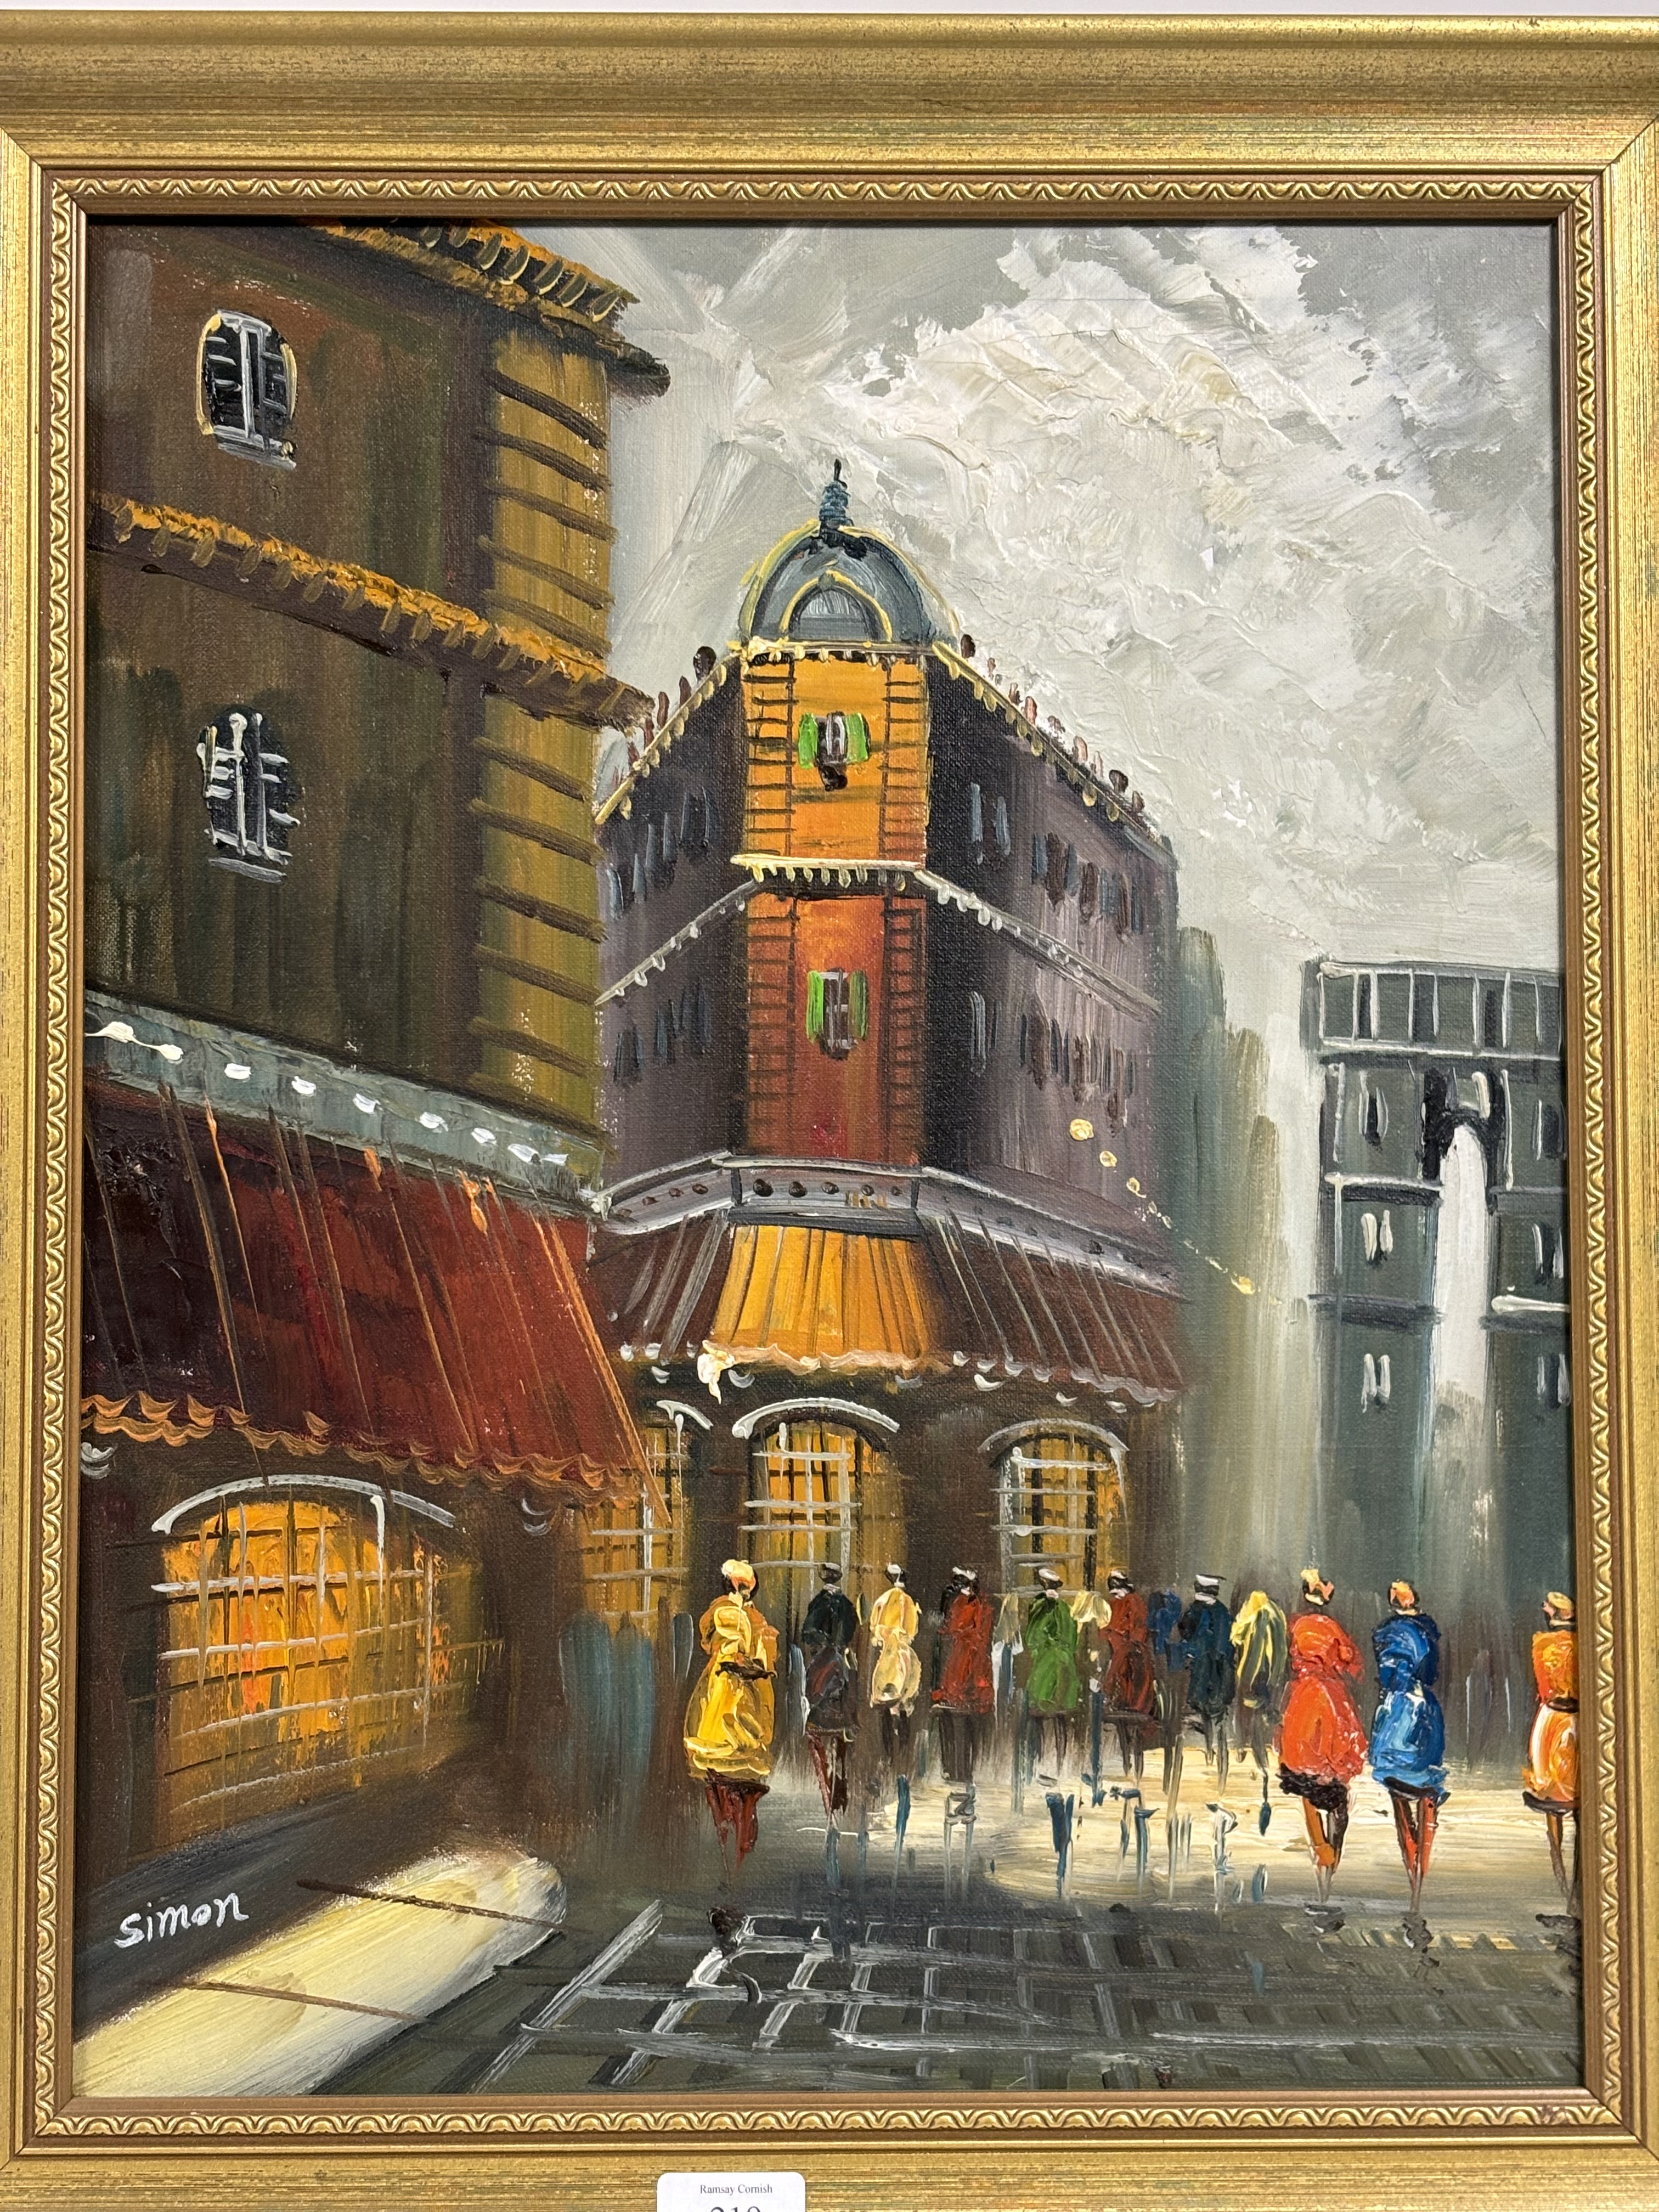 Simon, European Street Scene, oil on canvas, signed bottom left, framed. (49.5cmx39cm)